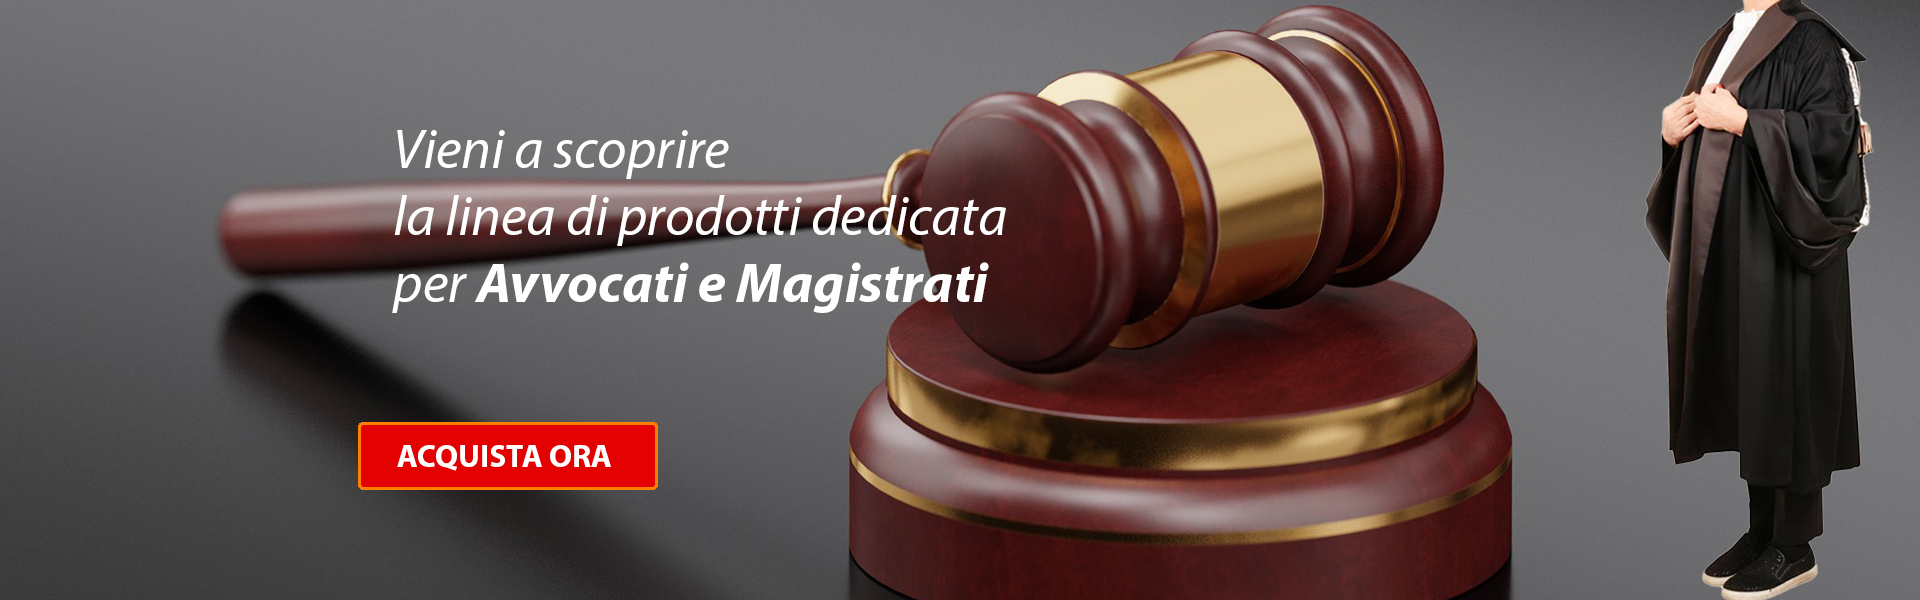 Avvocati e Magistrati